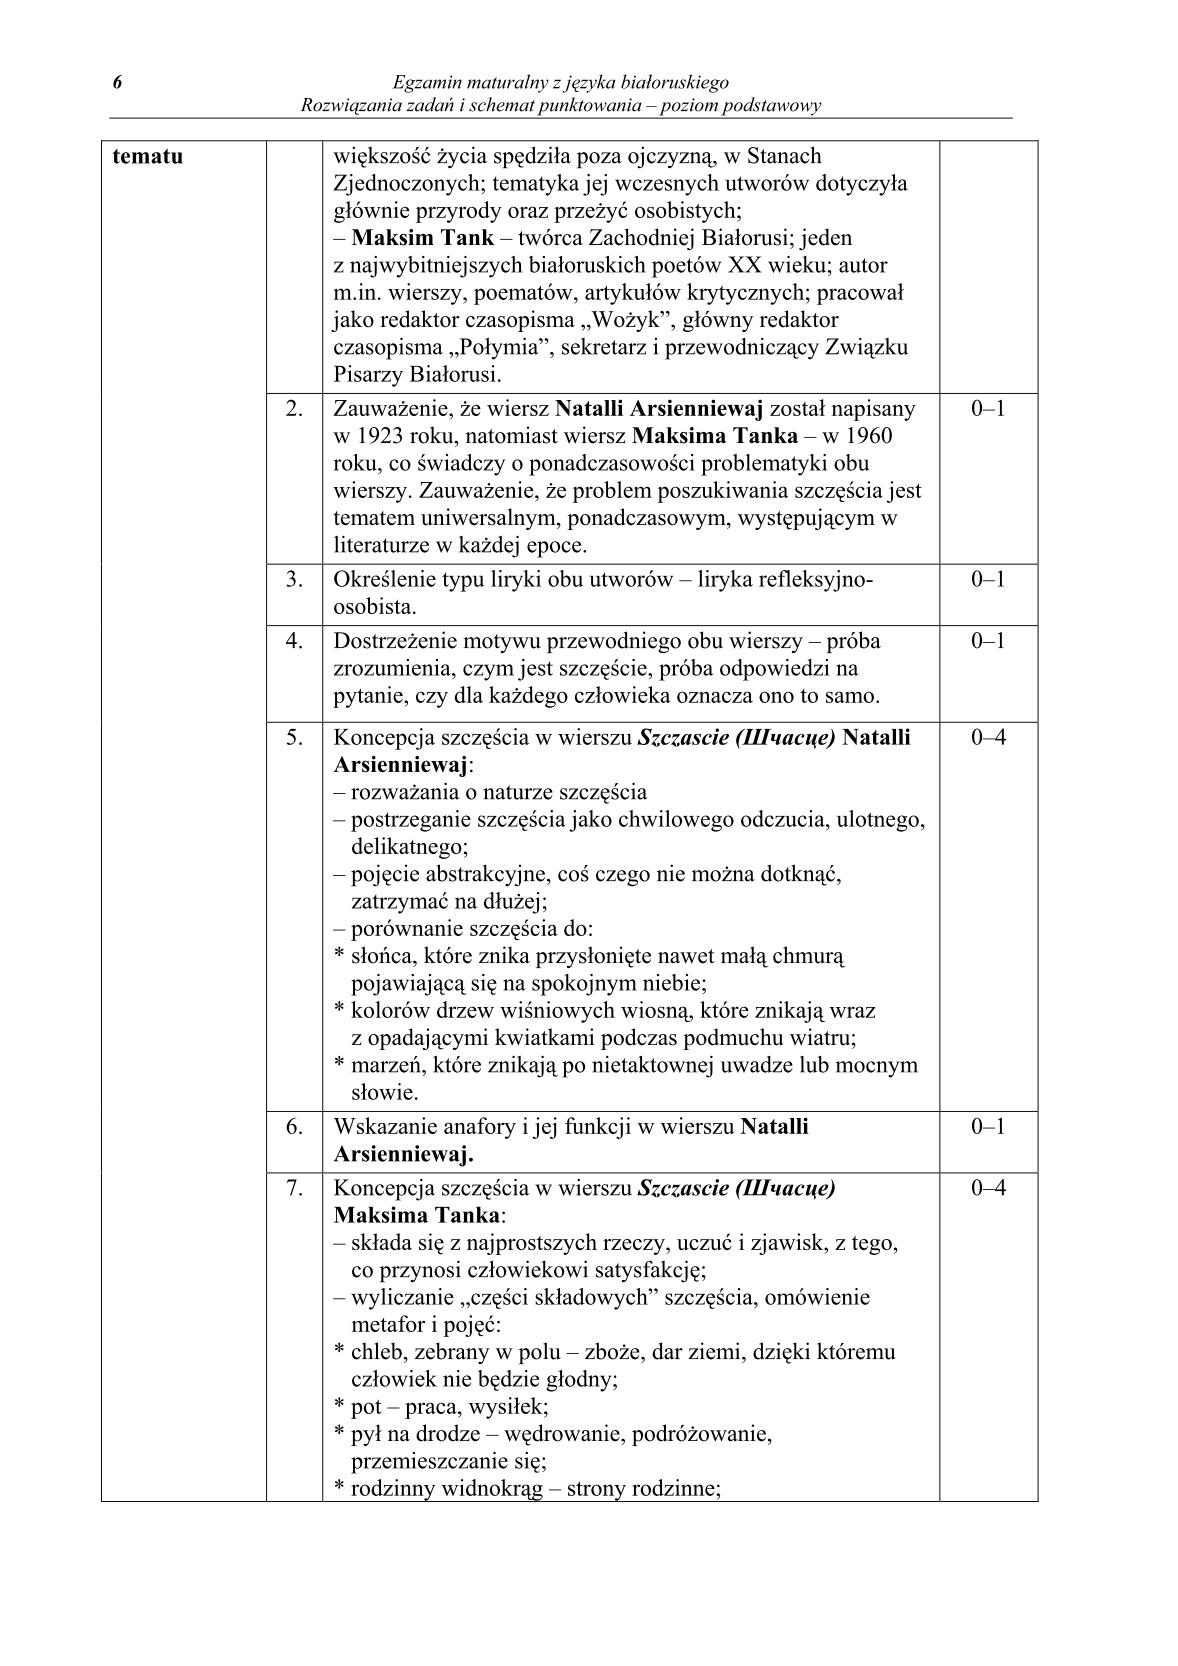 odpowiedzi-jezyk-bialoruski-poziom-podstawowy-matura-2014-str.6